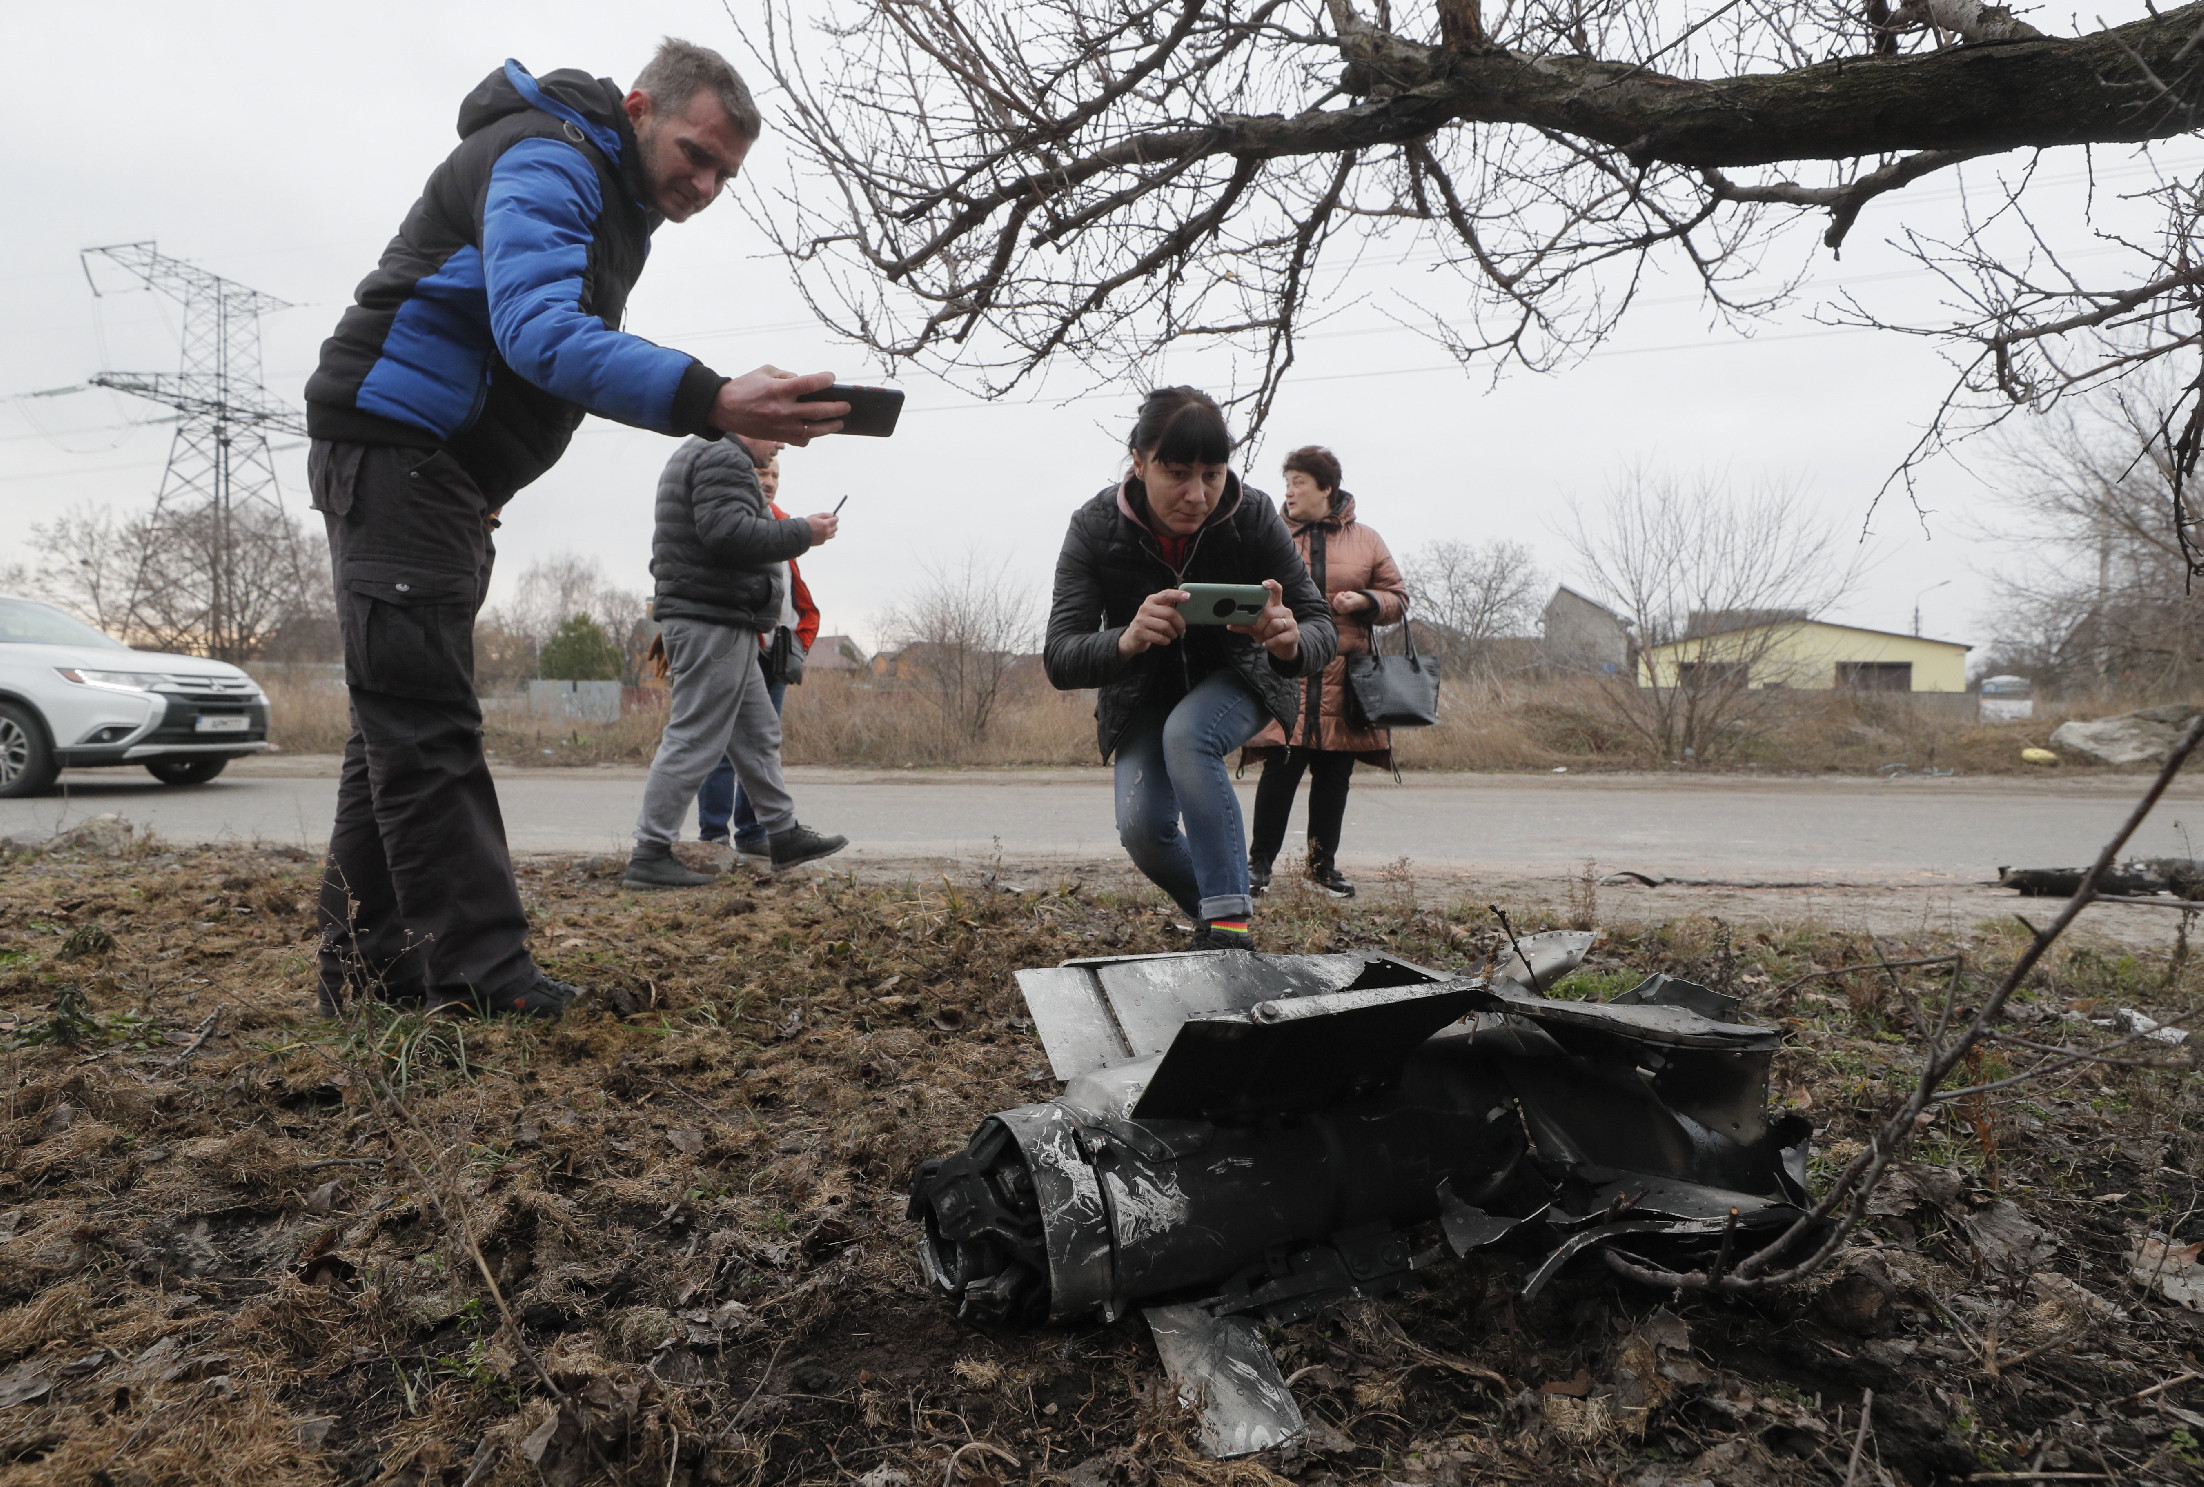 Ukrán hivatalos közlés szerint Belaruszból kilőtt rakéták csapódtak be Zsitomirban